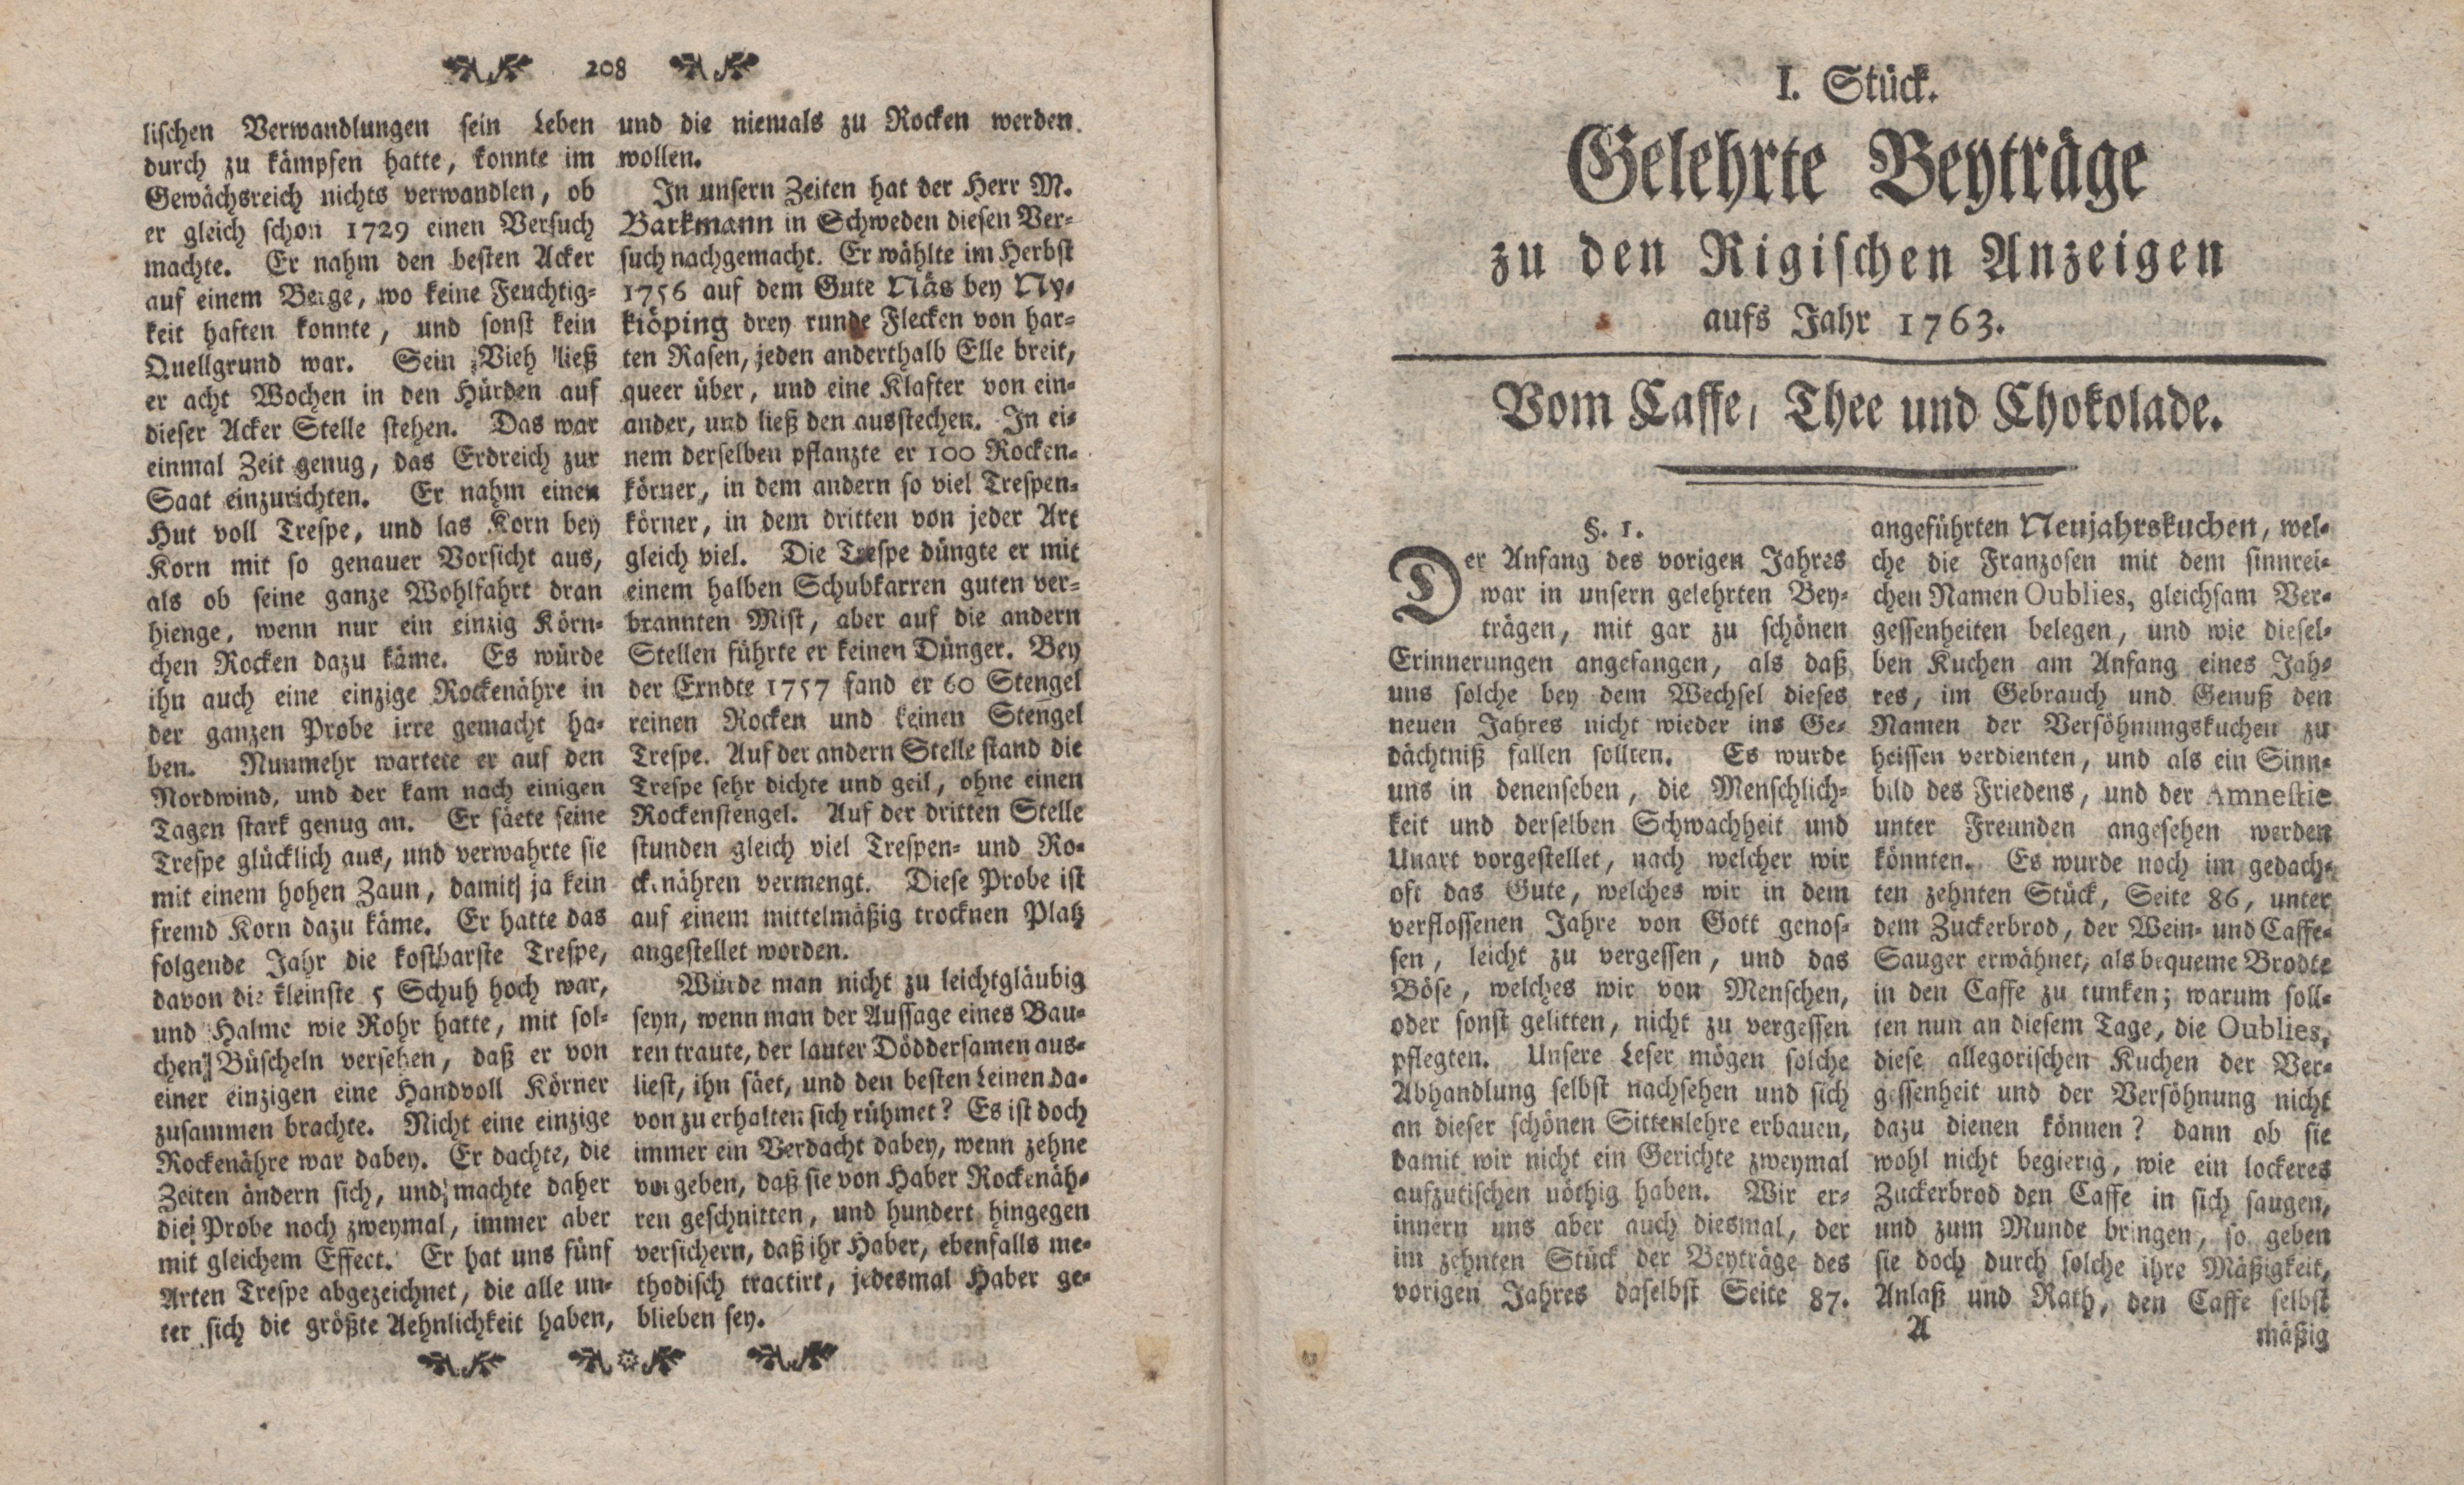 Gelehrte Beyträge zu den Rigischen Anzeigen 1763 (1763) | 1. (1) Title page